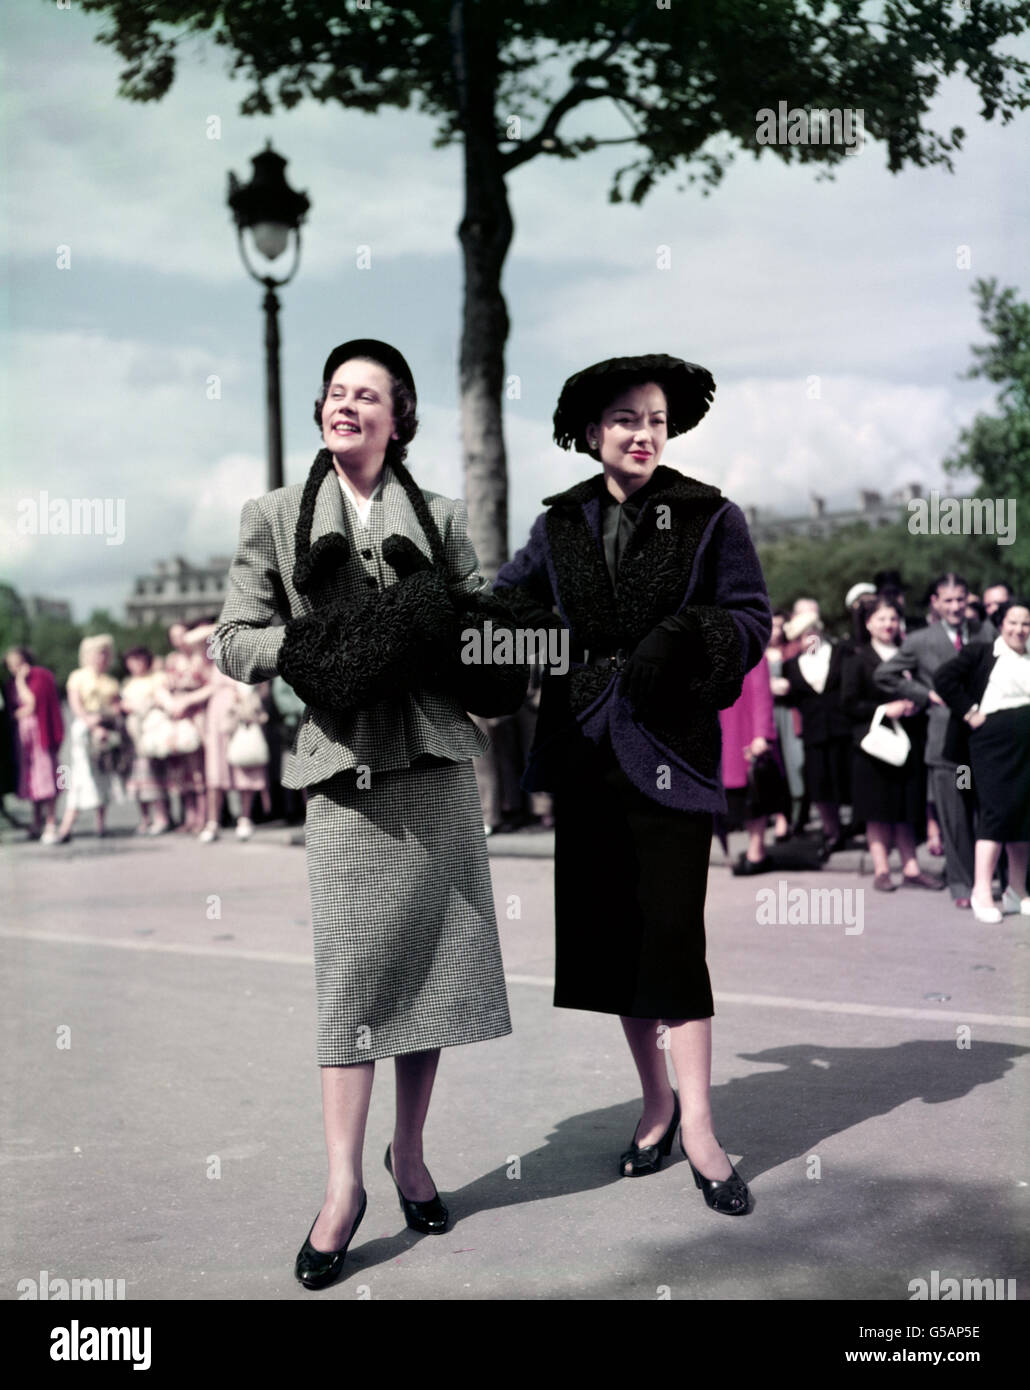 MODE DER 50ER JAHRE 1951: Zwei Wollmodelle von Nina Ricci aus Paris, links ist 'Rosa Bonheur', ein schwarz-weißer Karo-Anzug mit astrachan-Einfassung, und rechts 'La Valliere', eine violett-blaue Jacke mit astrachan-Einfassung, die über einem geraden schwarzen Rock getragen wird. Stockfoto